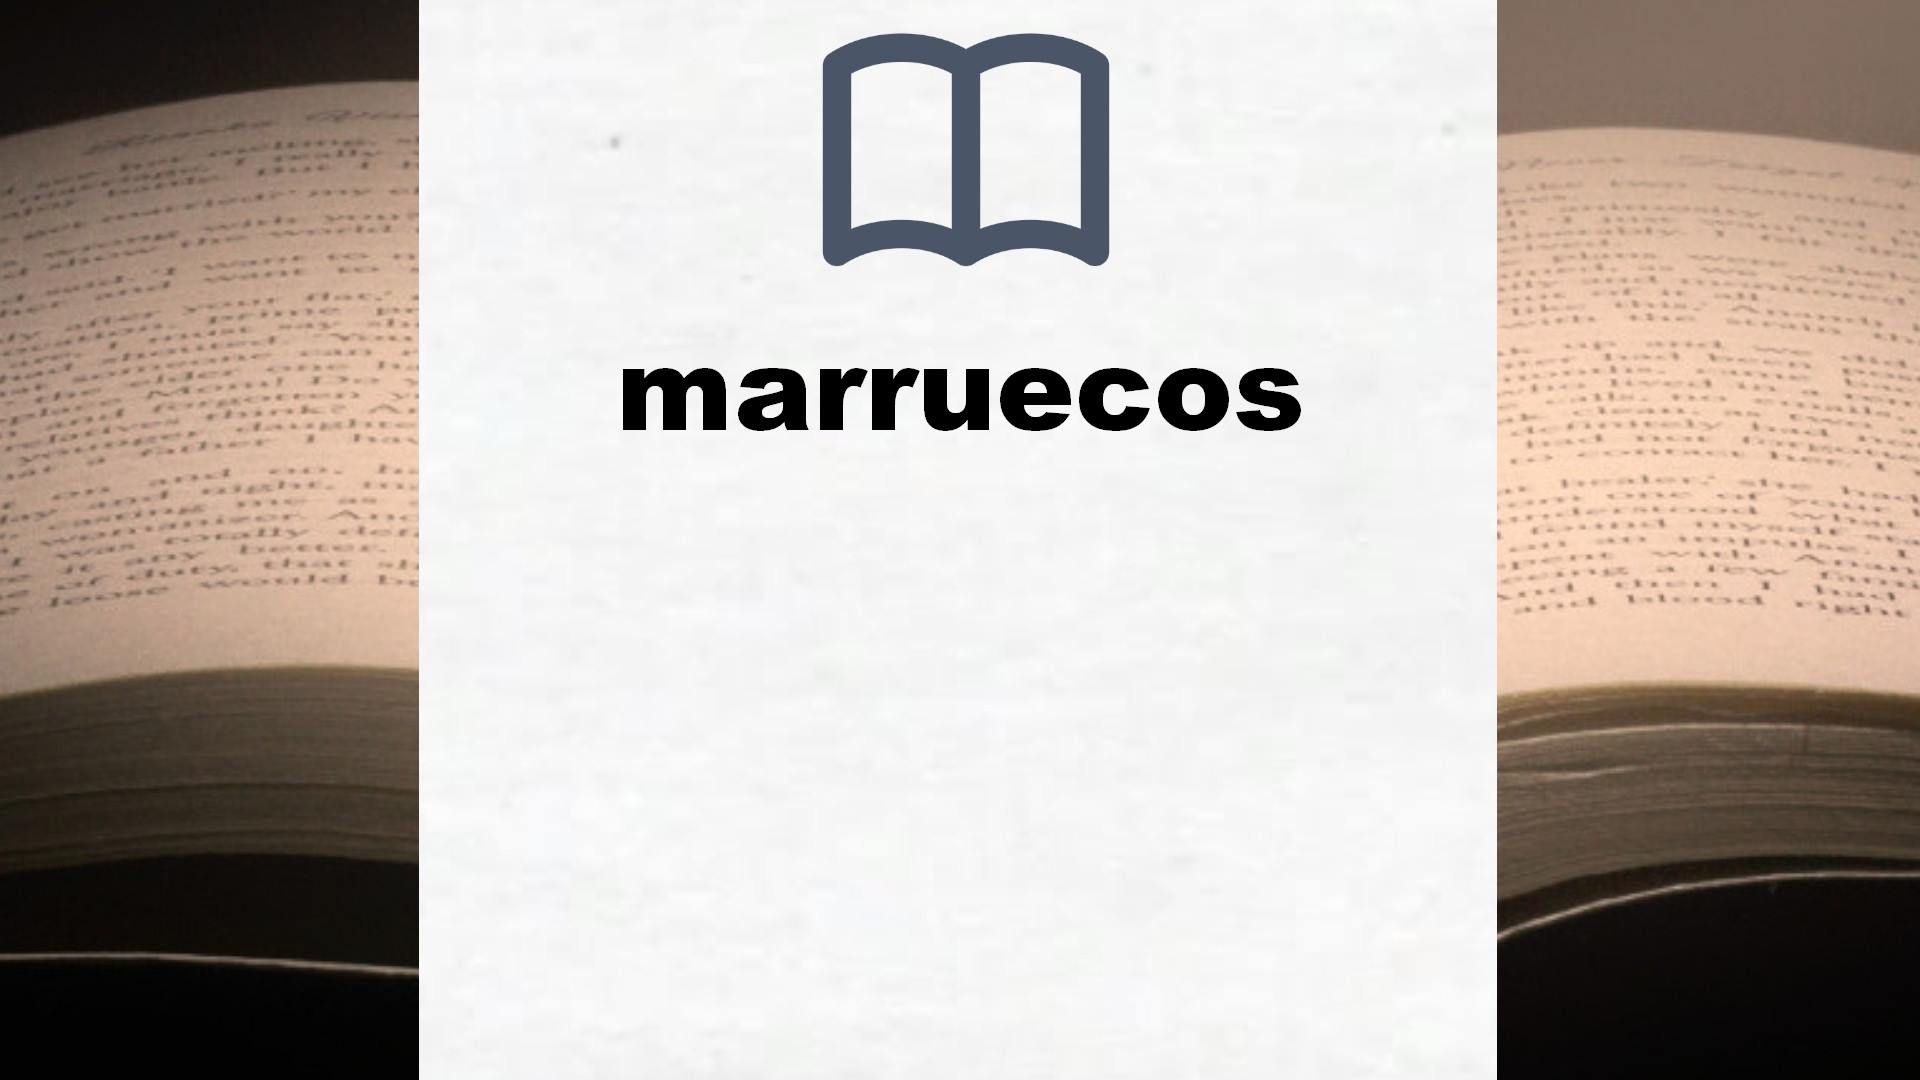 Libros sobre marruecos